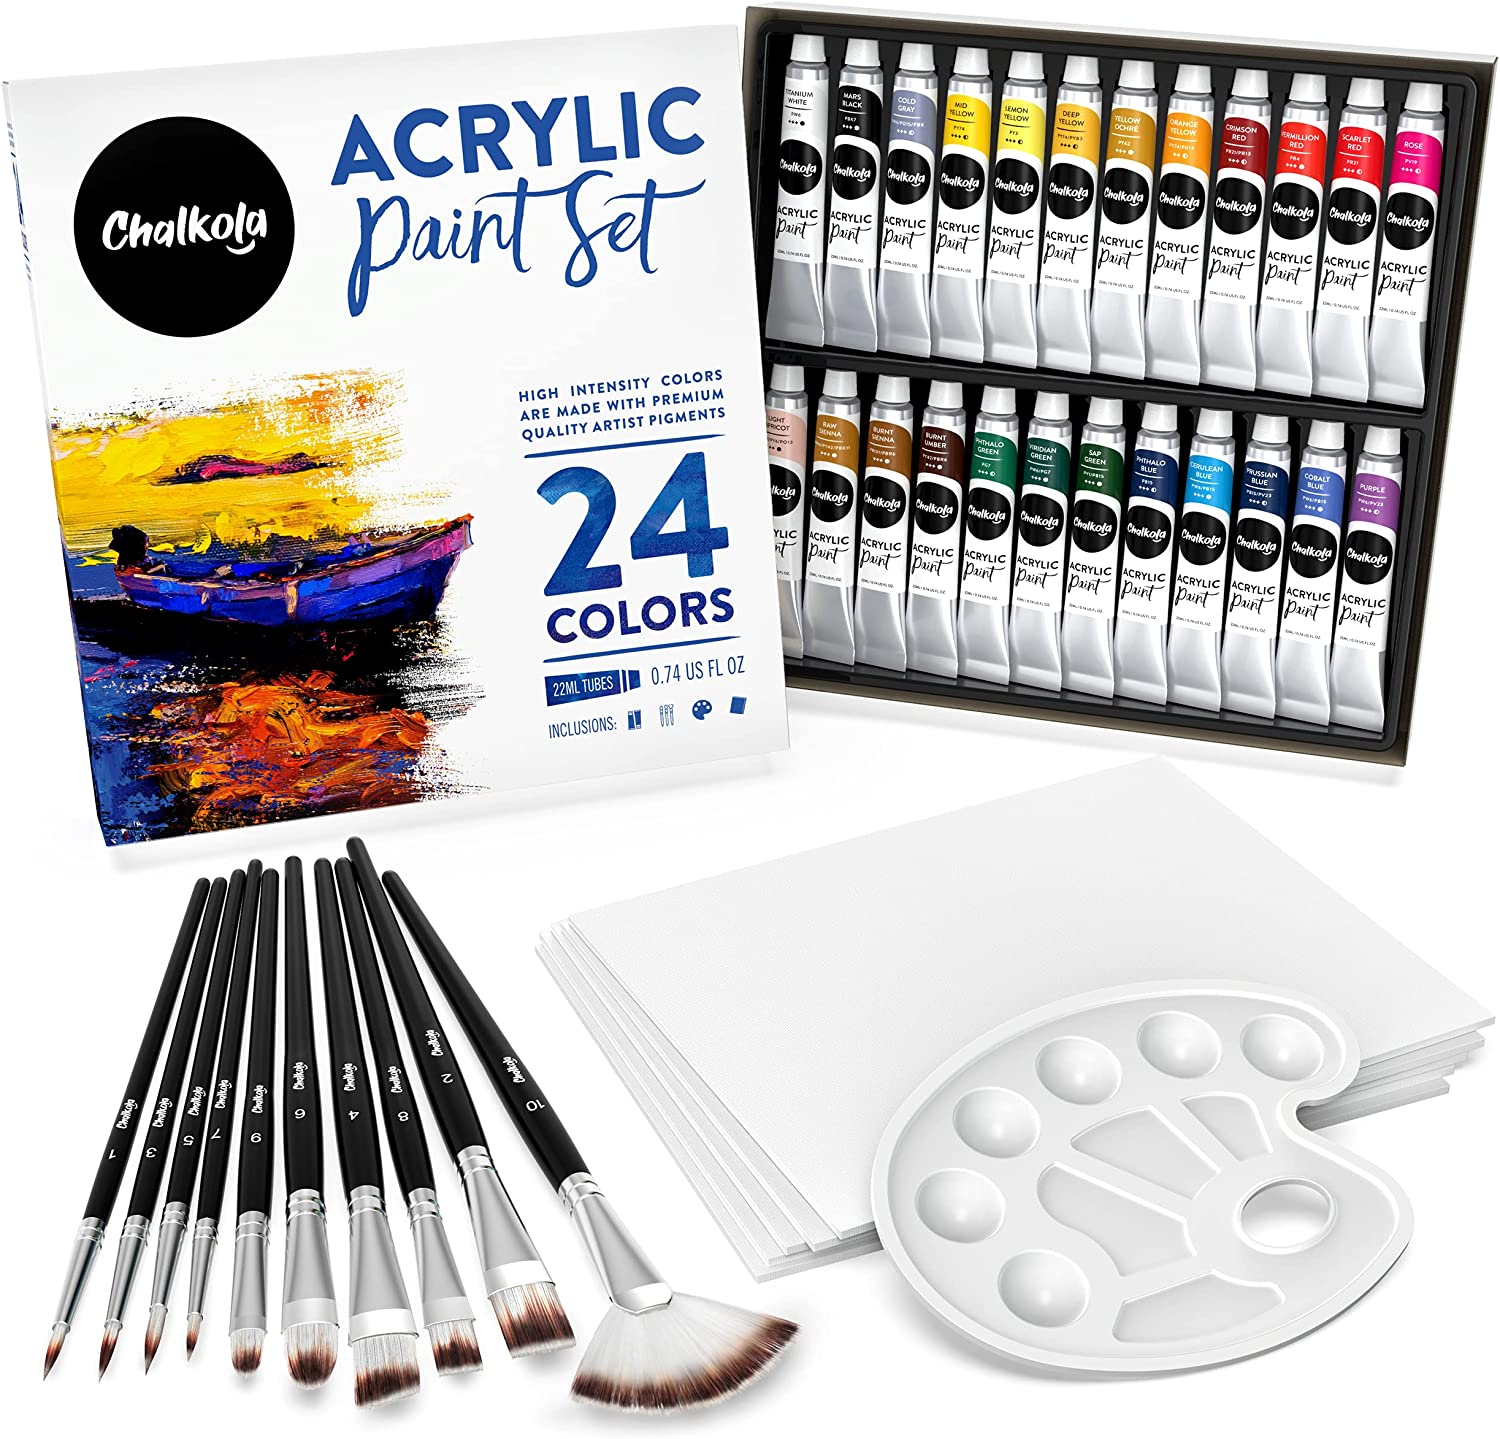  Acrylic Paint Set 24 Colors Acrylic Paints for